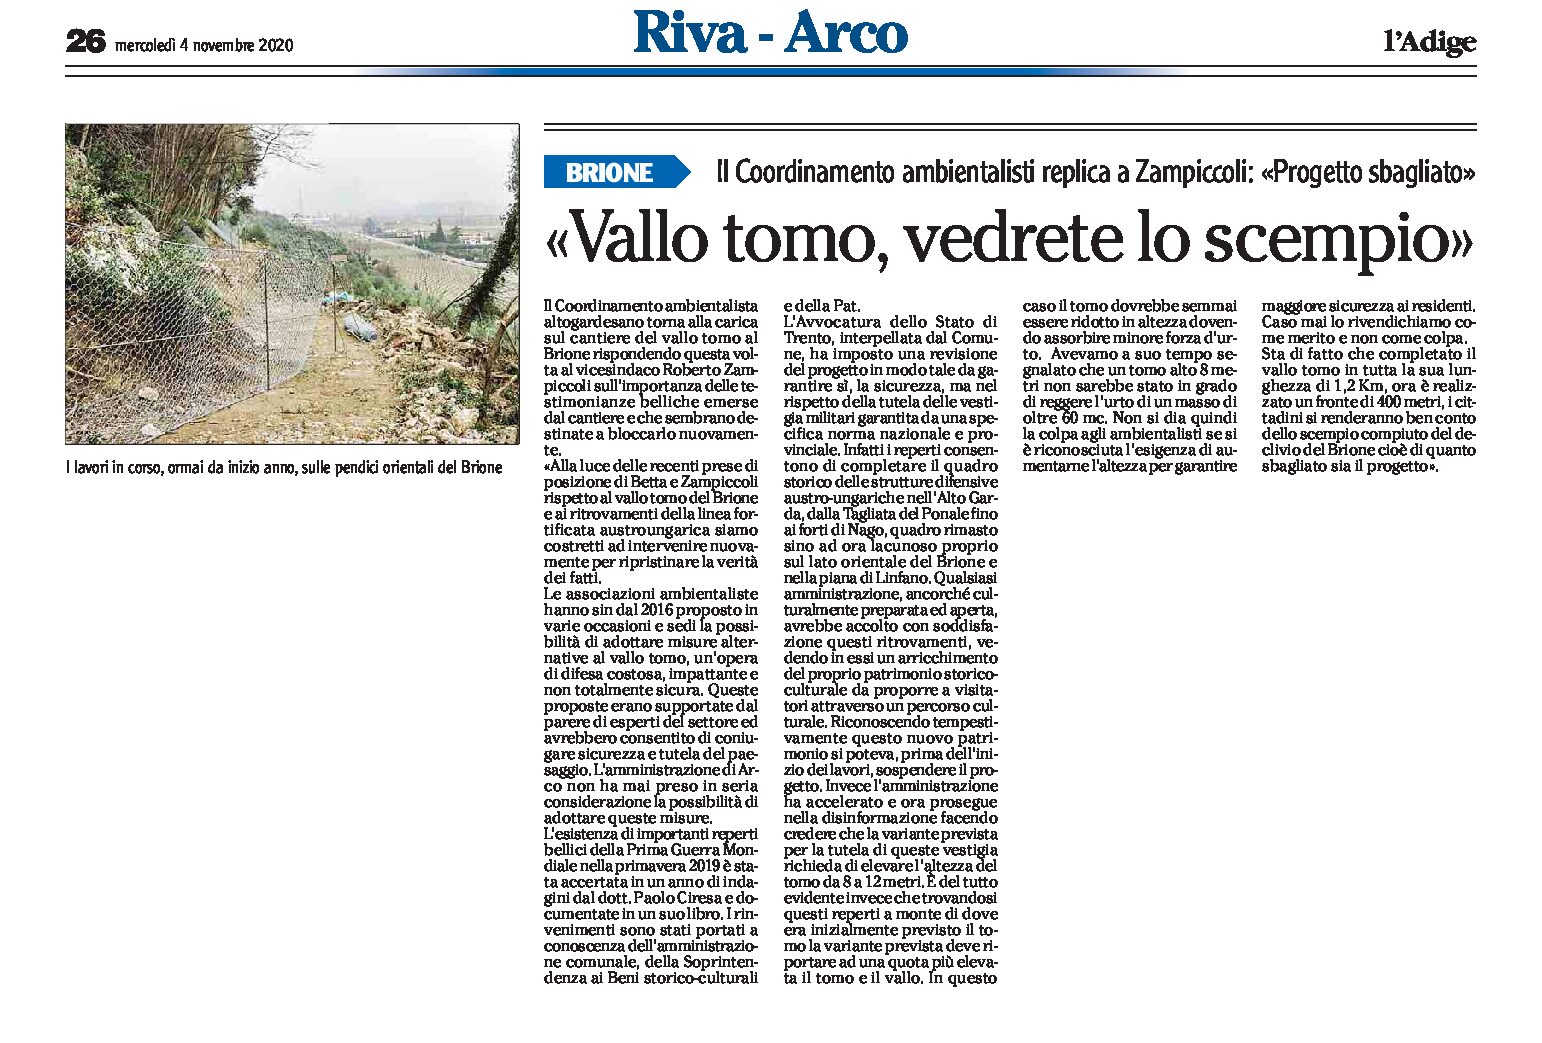 Arco, Brione: replica il Coordinamento ambientalisti “vallo tomo, progetto sbagliato, vedrete lo scempio”